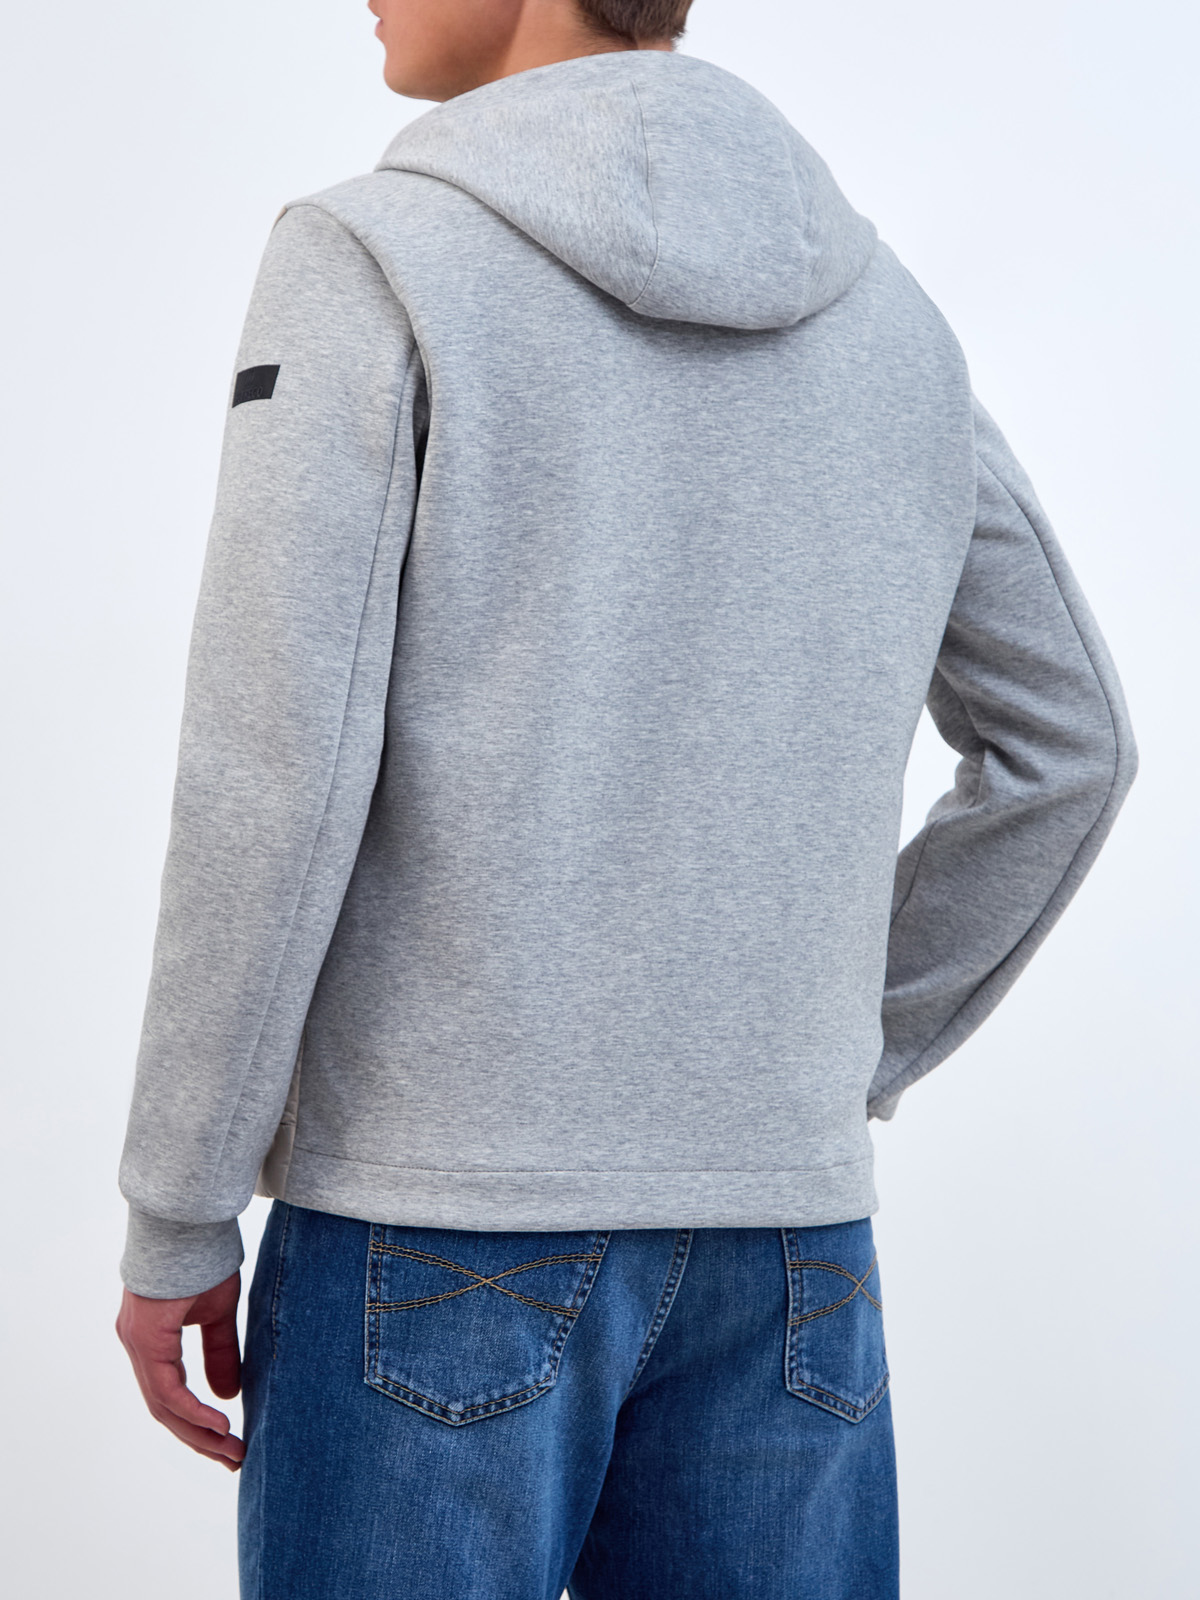 Комбинированная куртка из нейлона и хлопка с пуховым утеплителем HETREGO, цвет мульти, размер L;XL;2XL;3XL;4XL - фото 4